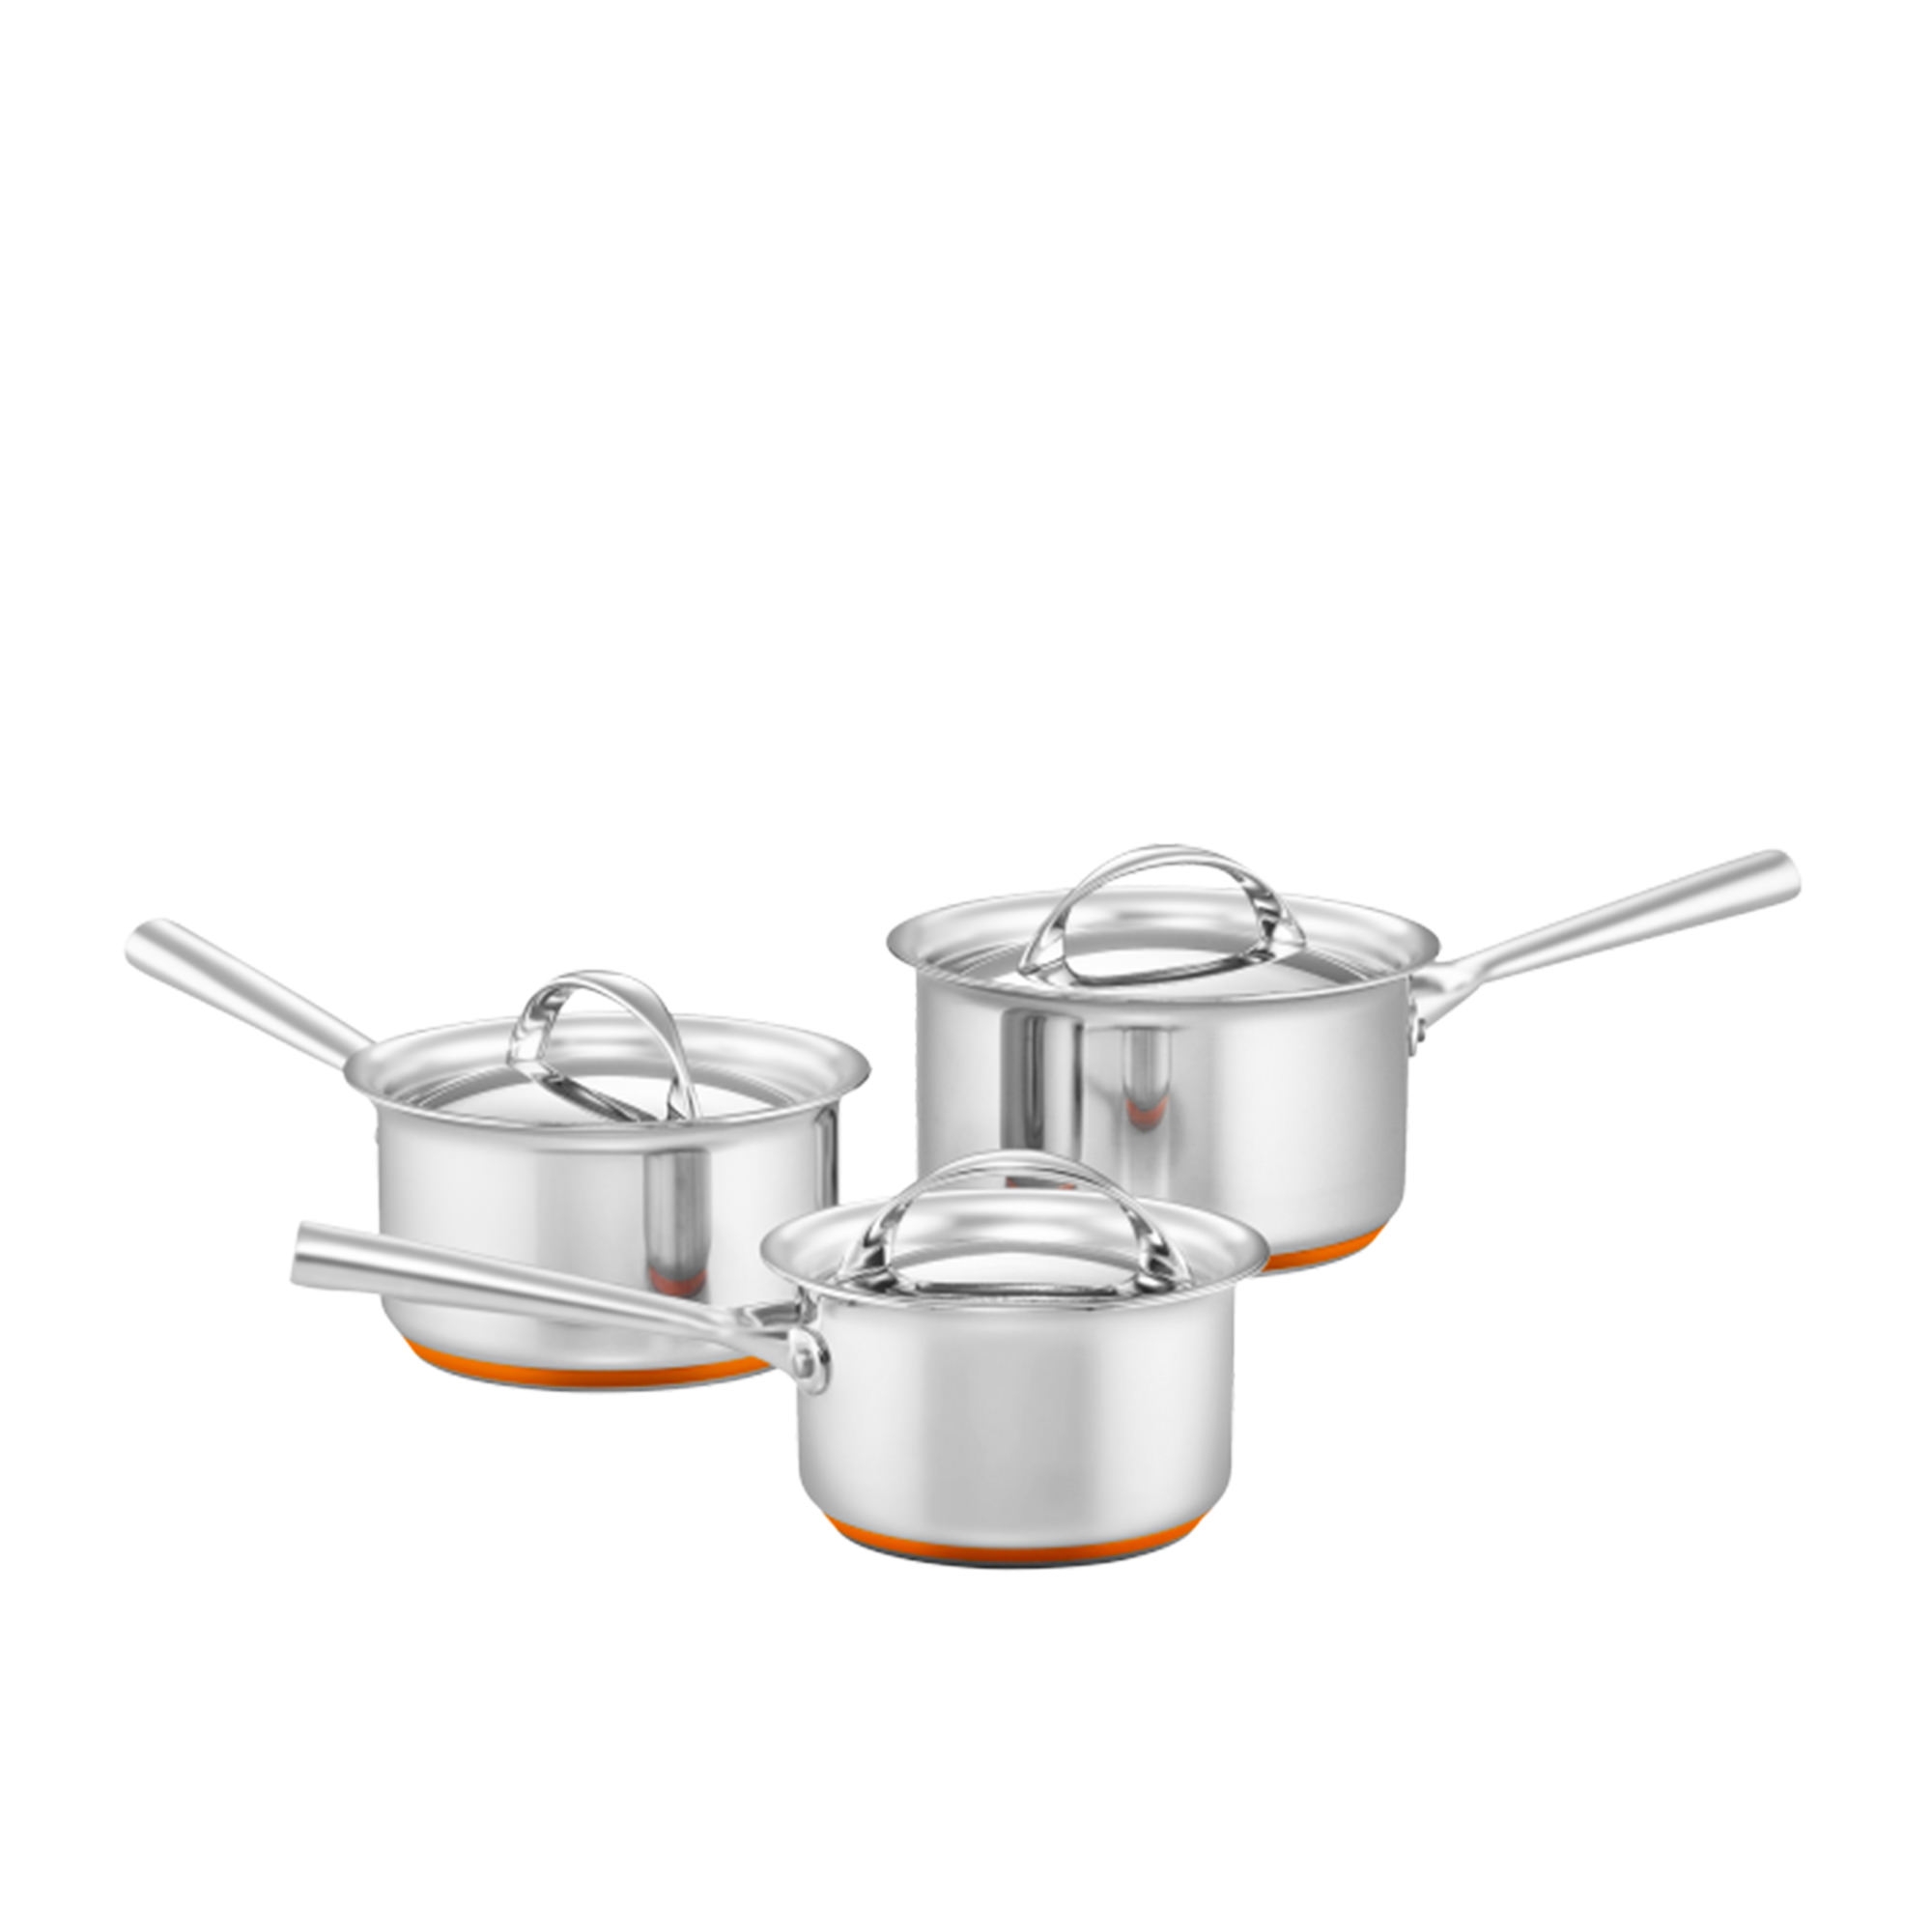 Essteele Per Vita 3pc Stainless Steel Cookware Set Image 1